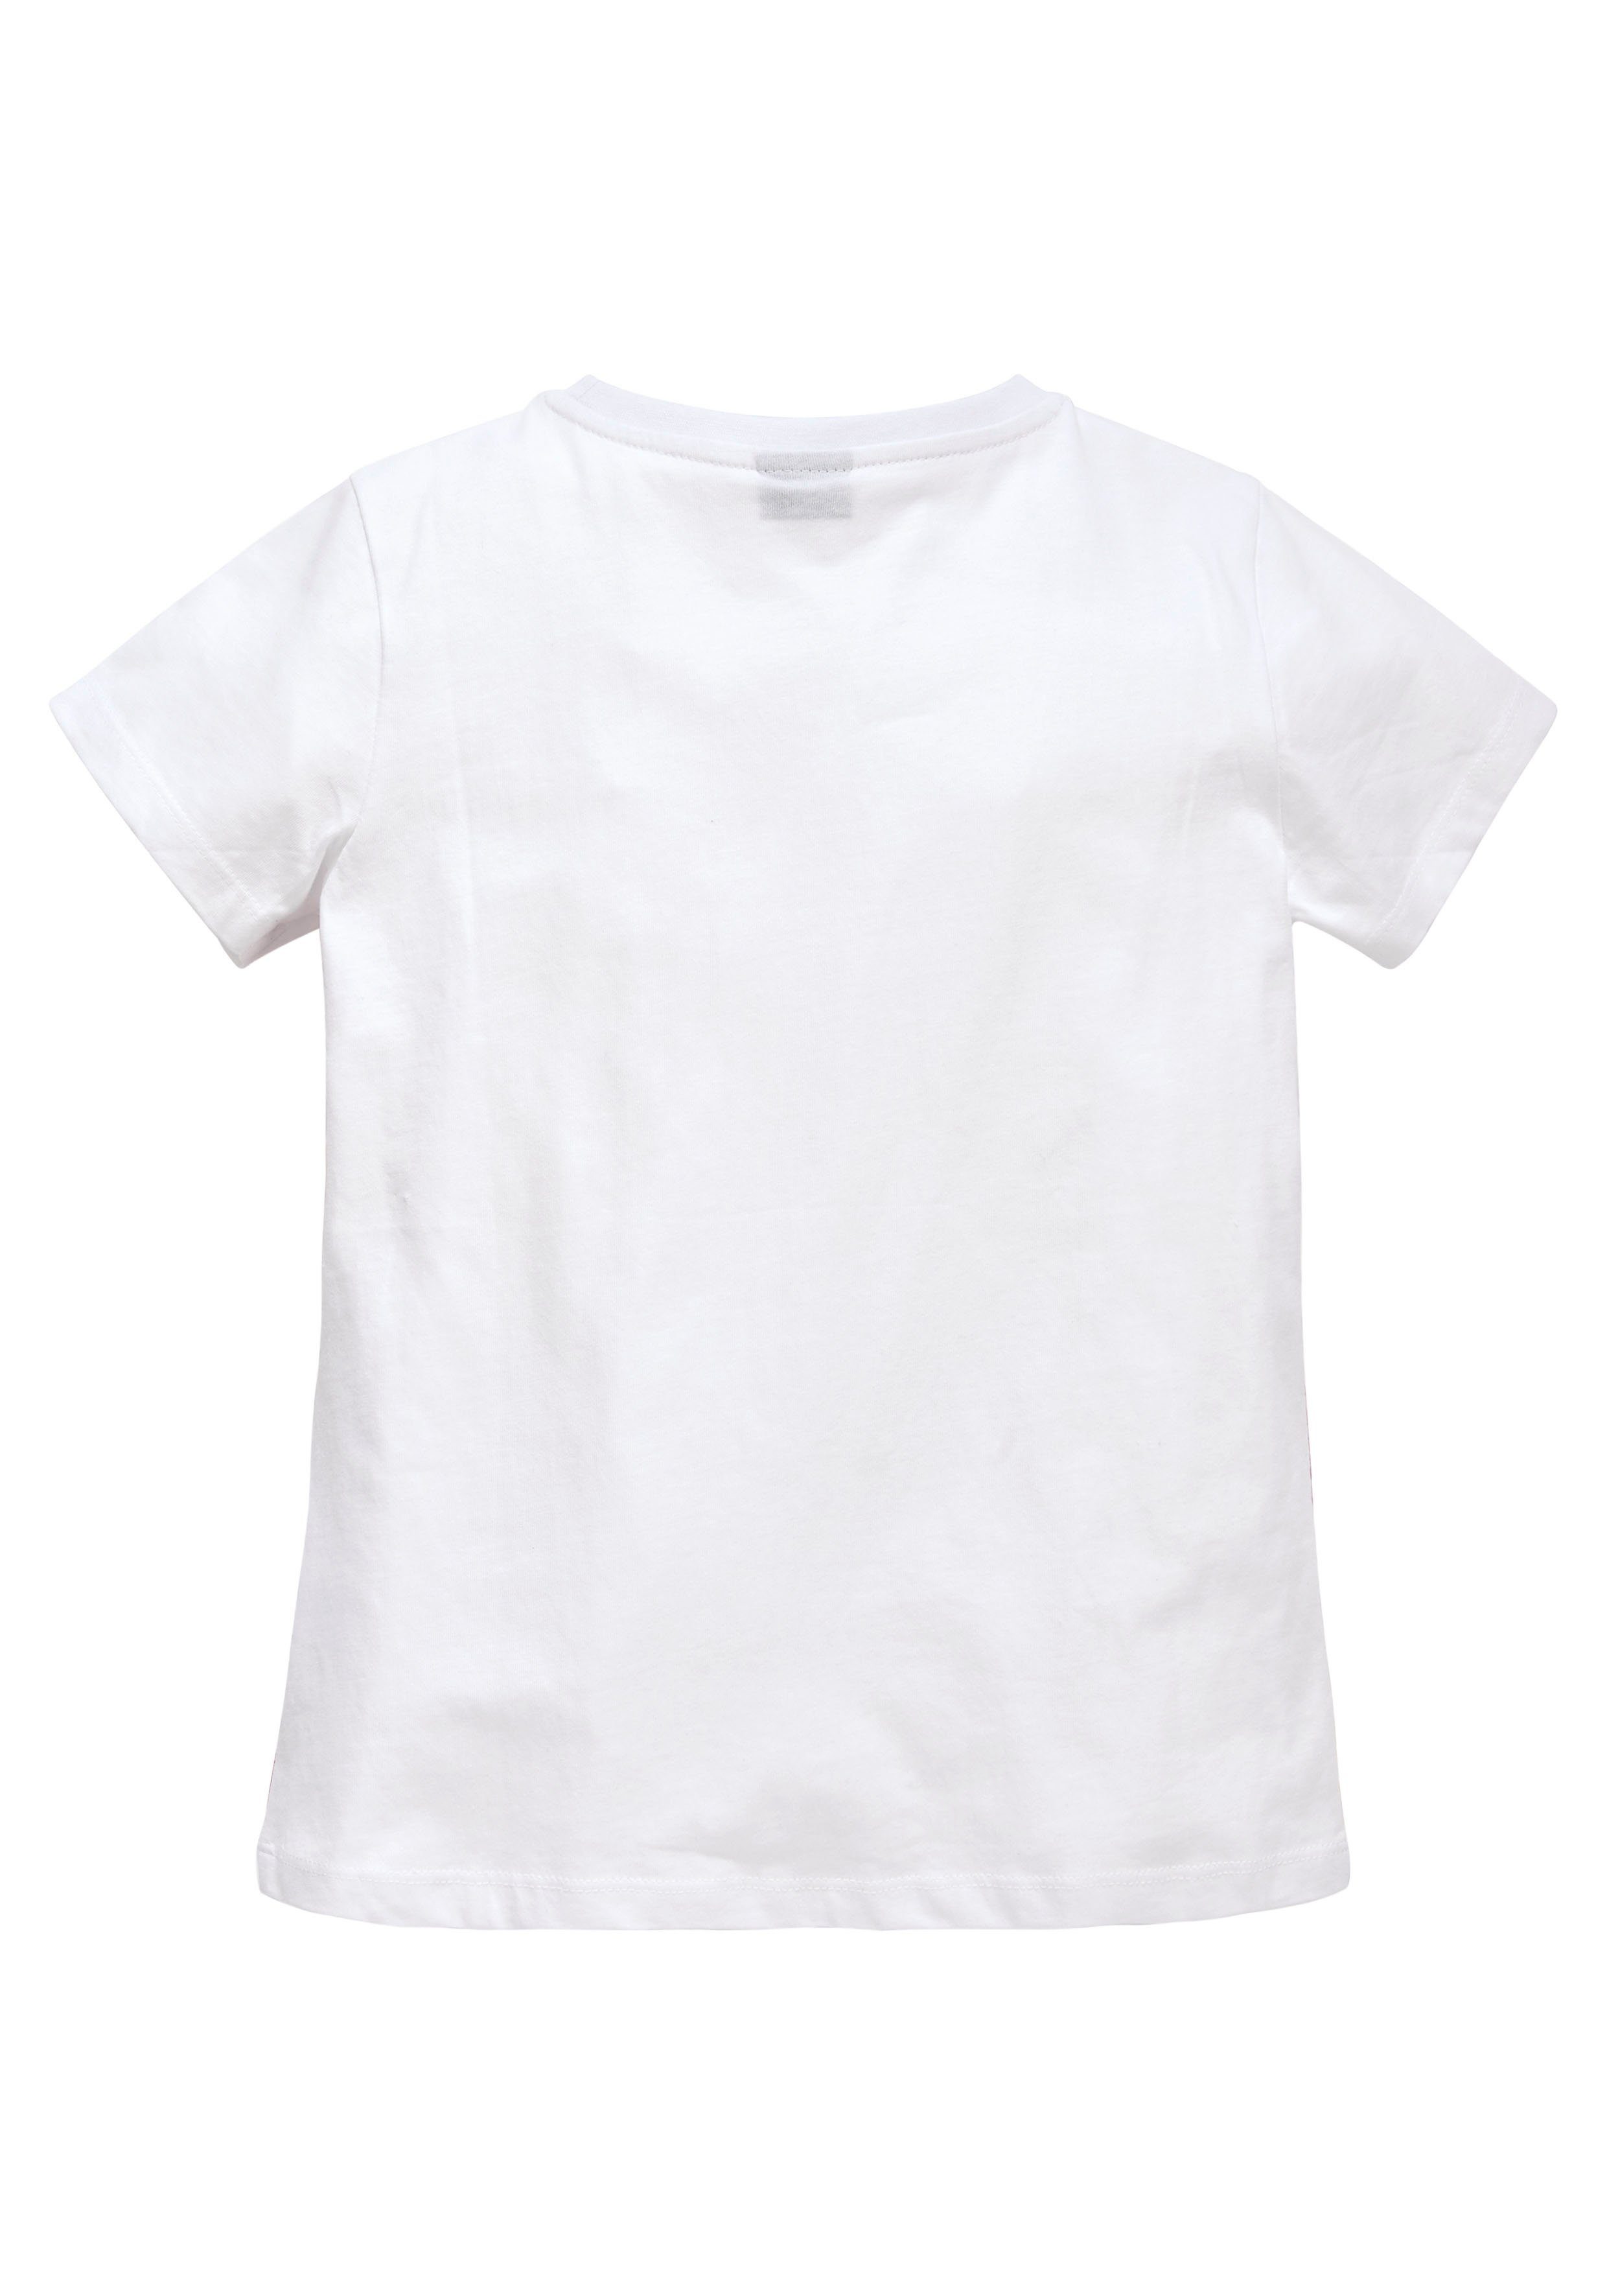 KIDSWORLD T-Shirt taillierter leicht Form in